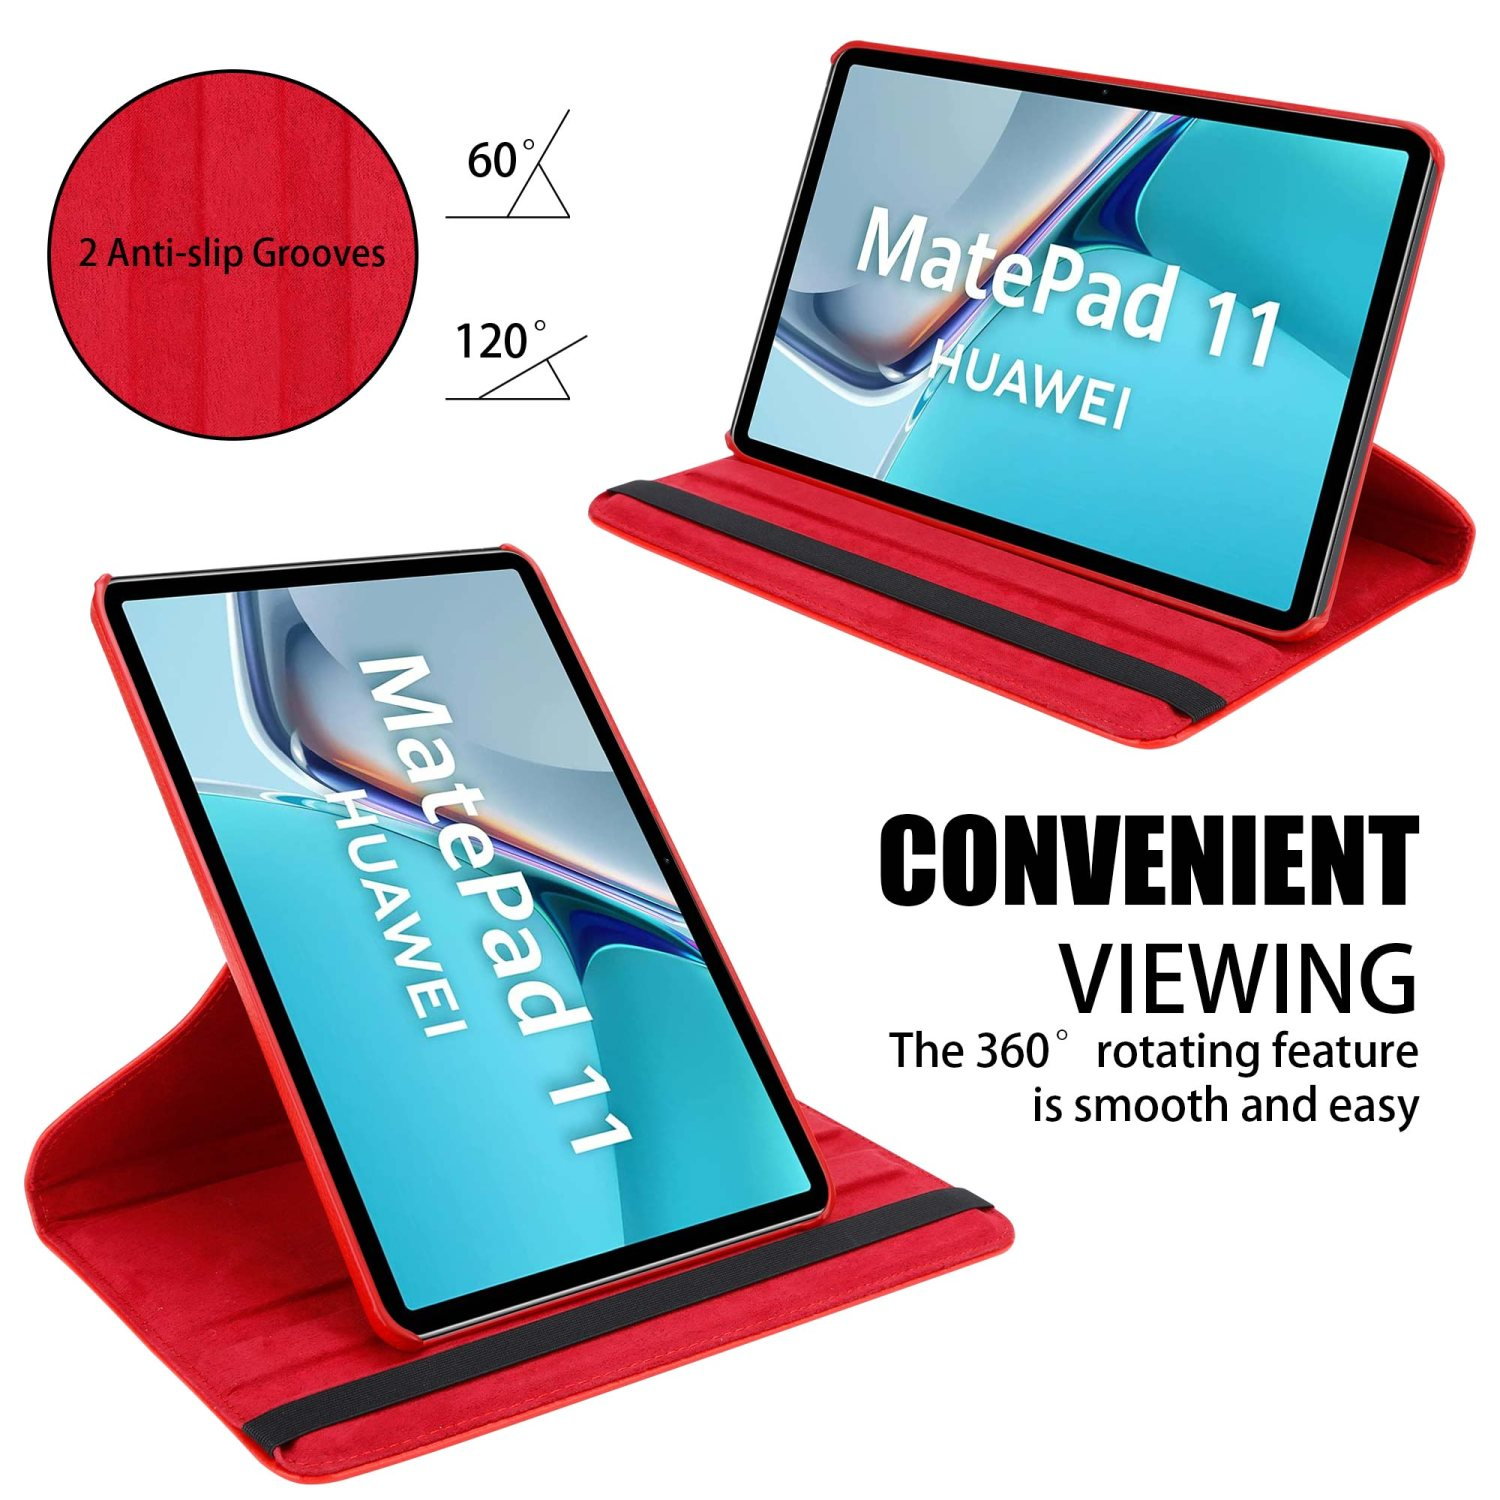 CADORABO Tablet Hülle Style für im Book Bookcover Kunstleder, Huawei Tablethülle MOHN ROT